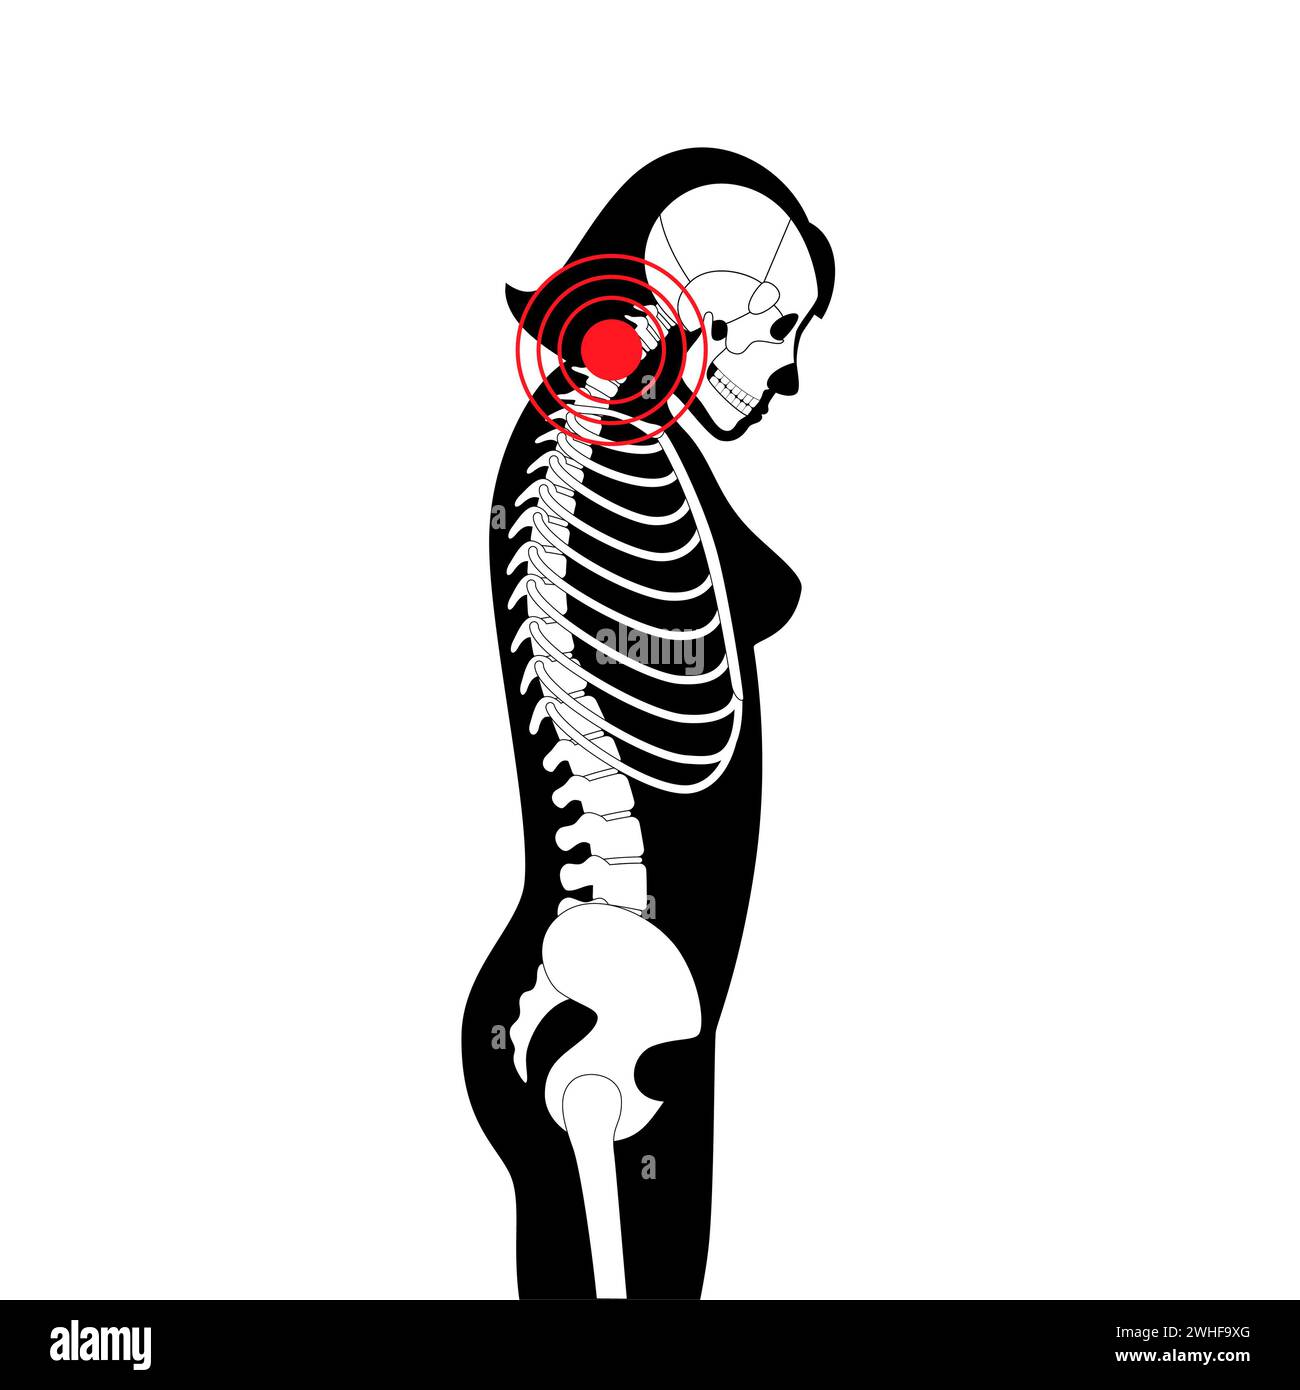 Neck vertebrae deformity, illustration Stock Photo